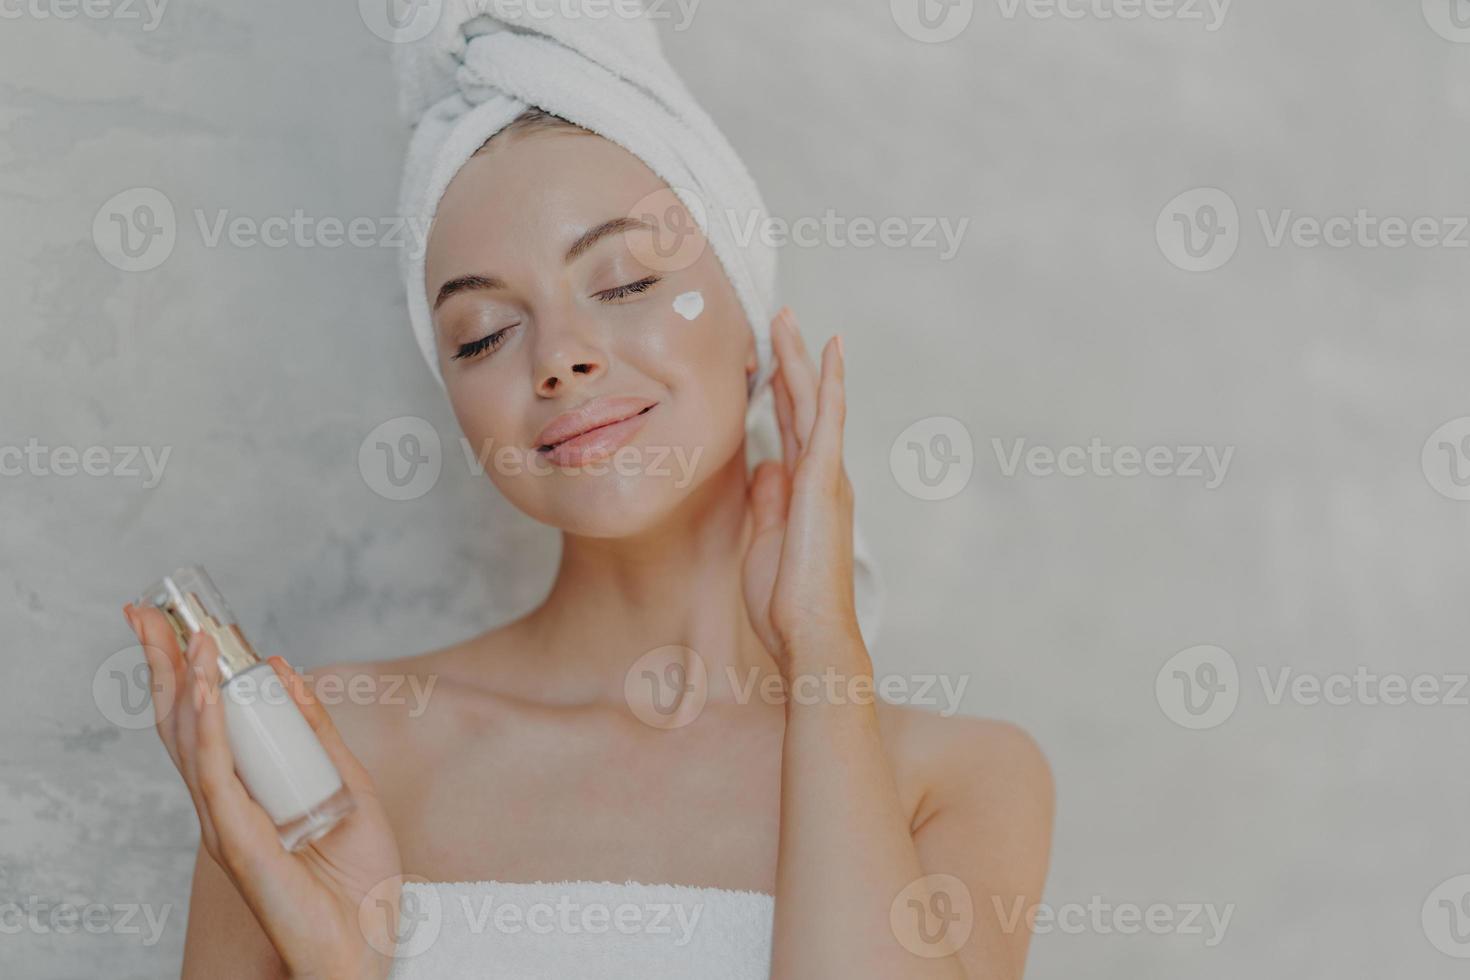 huvudbild av nöjd attraktiv kvinna applicerar ansiktslotion, nöjd med ny kosmetisk produkt, håller ögonen stängda, rör vid mjuk hud efter bad, har välvårdad hy, poserar mot grå vägg foto